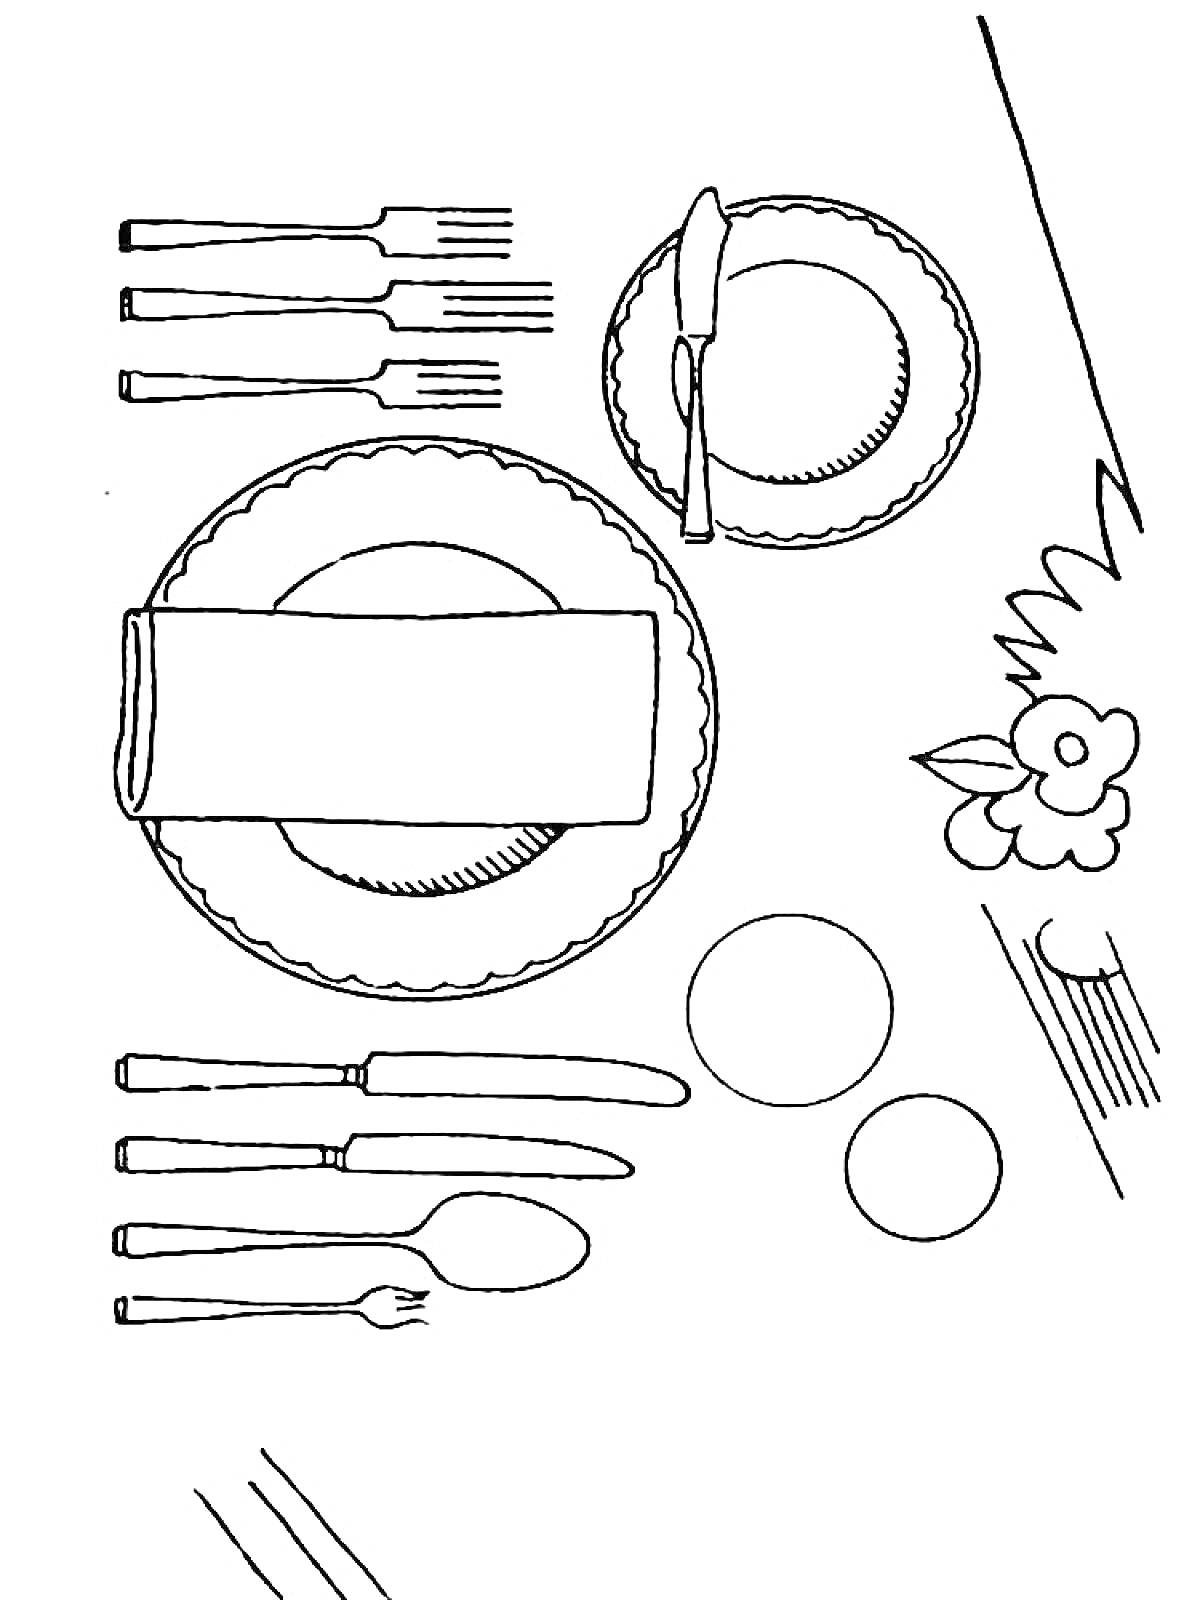 Столовый набор, включающий тарелки, вилки, ножи, ложки, салфетки, цветок